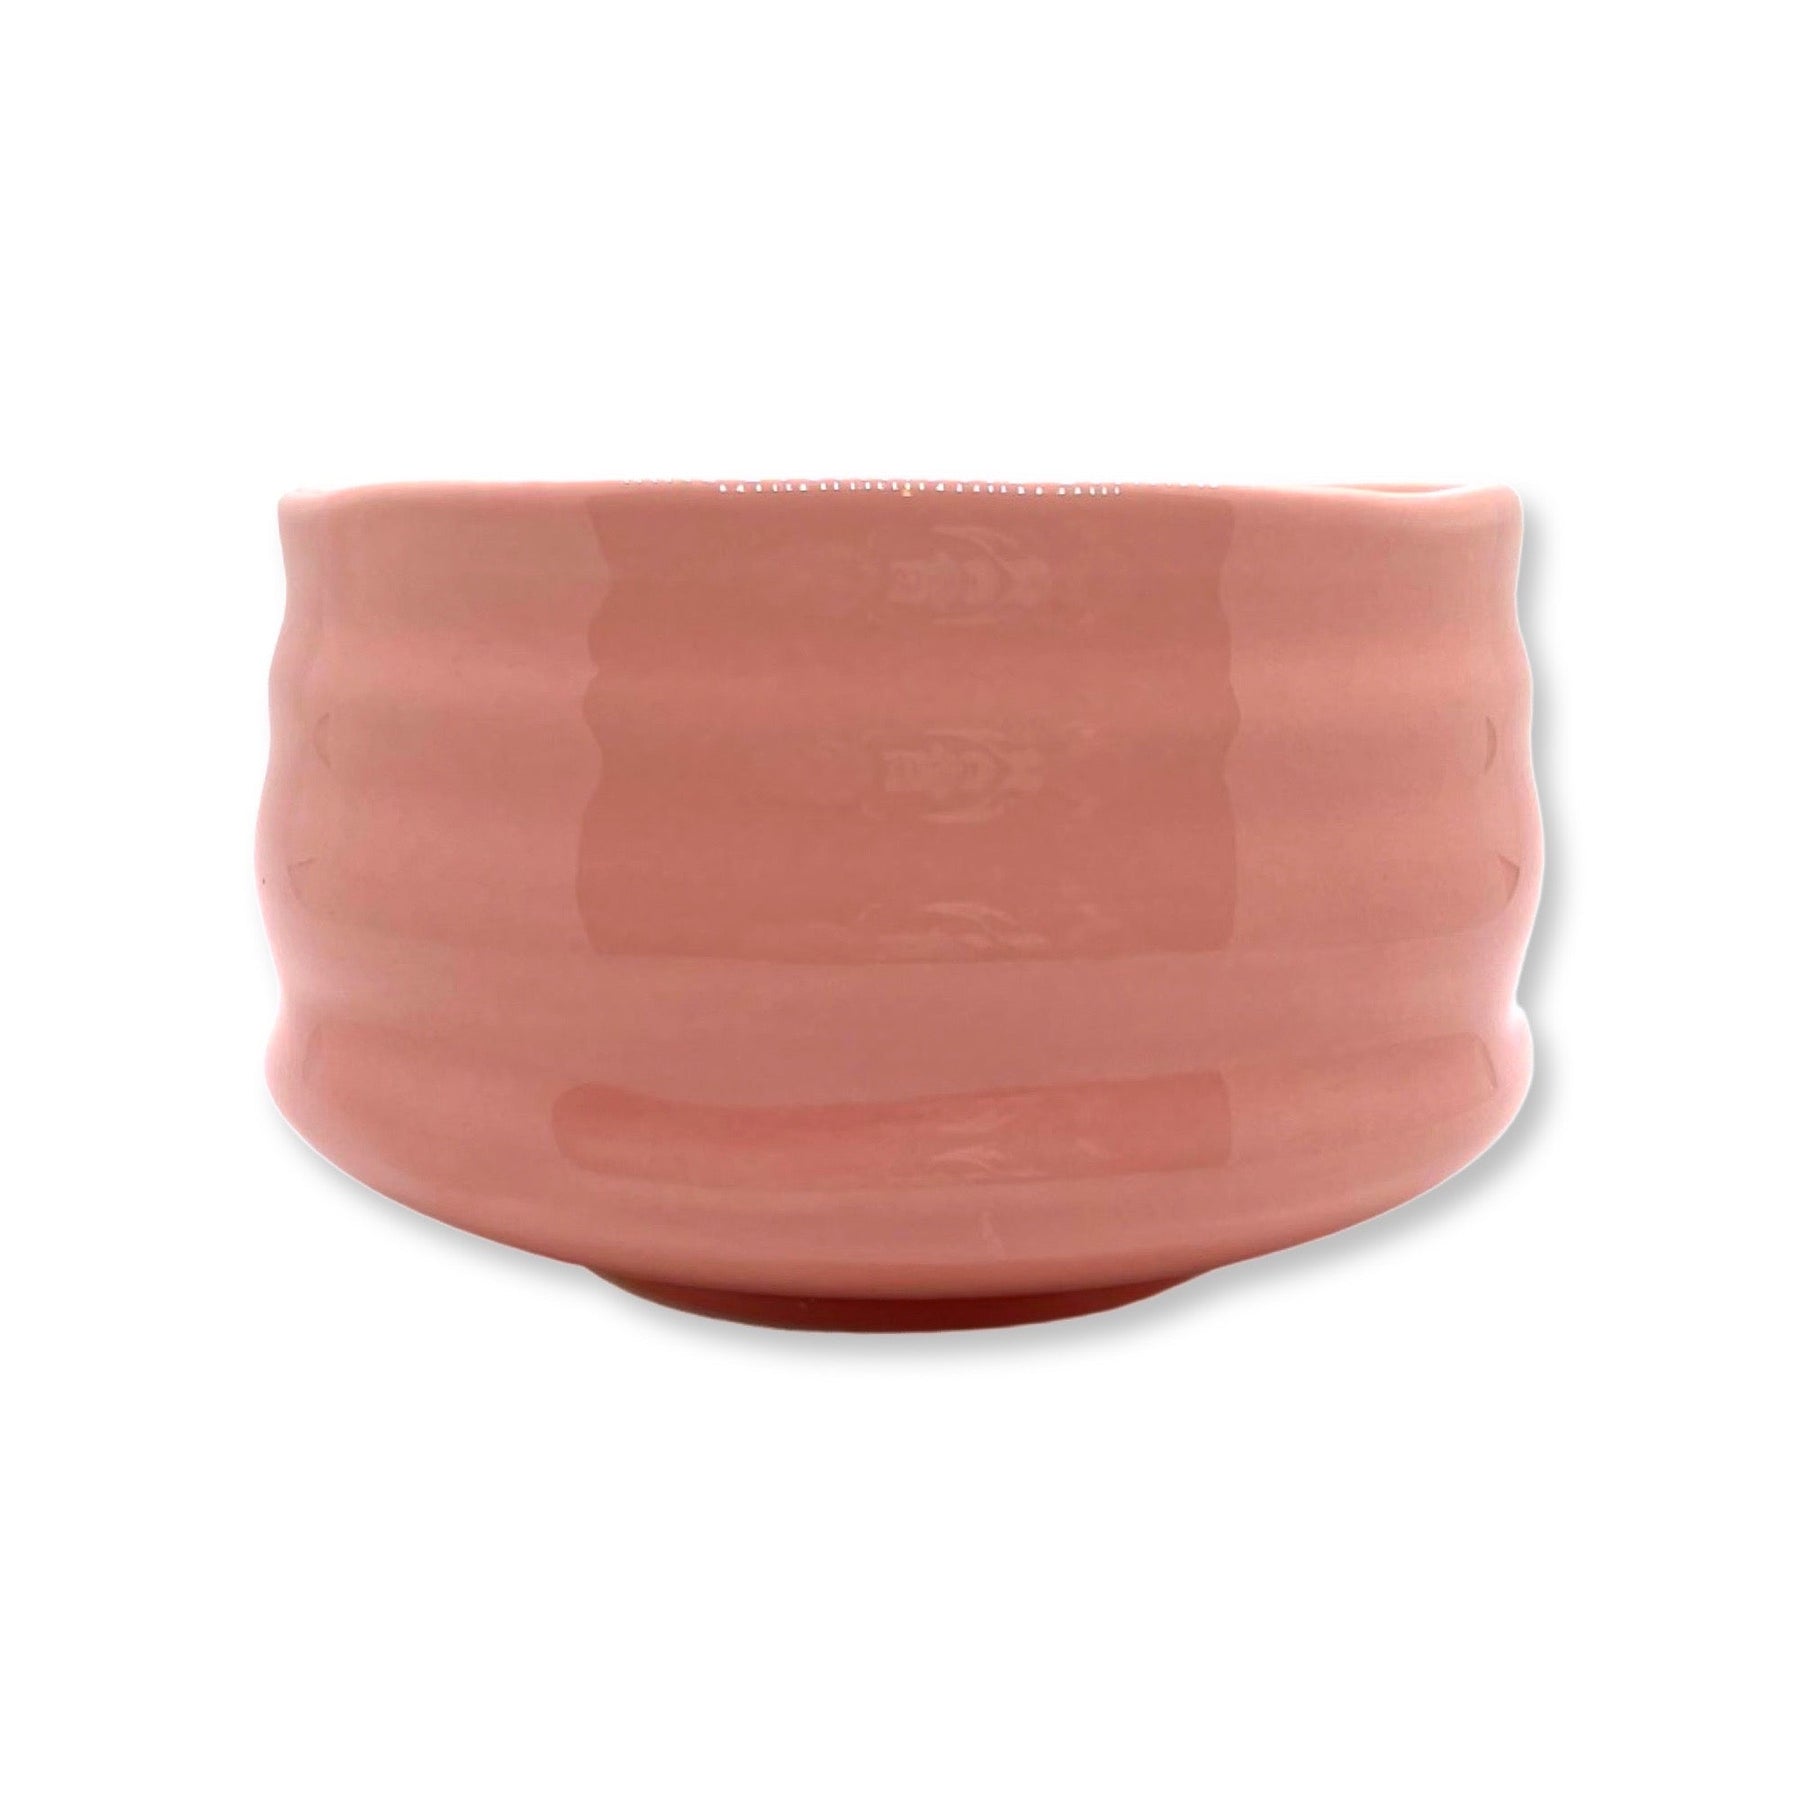 https://shizencha.com/cdn/shop/products/strawberry-cream-pink-matcha-chawan-green-tea-bowl-976209_1800x1800.jpg?v=1647366914